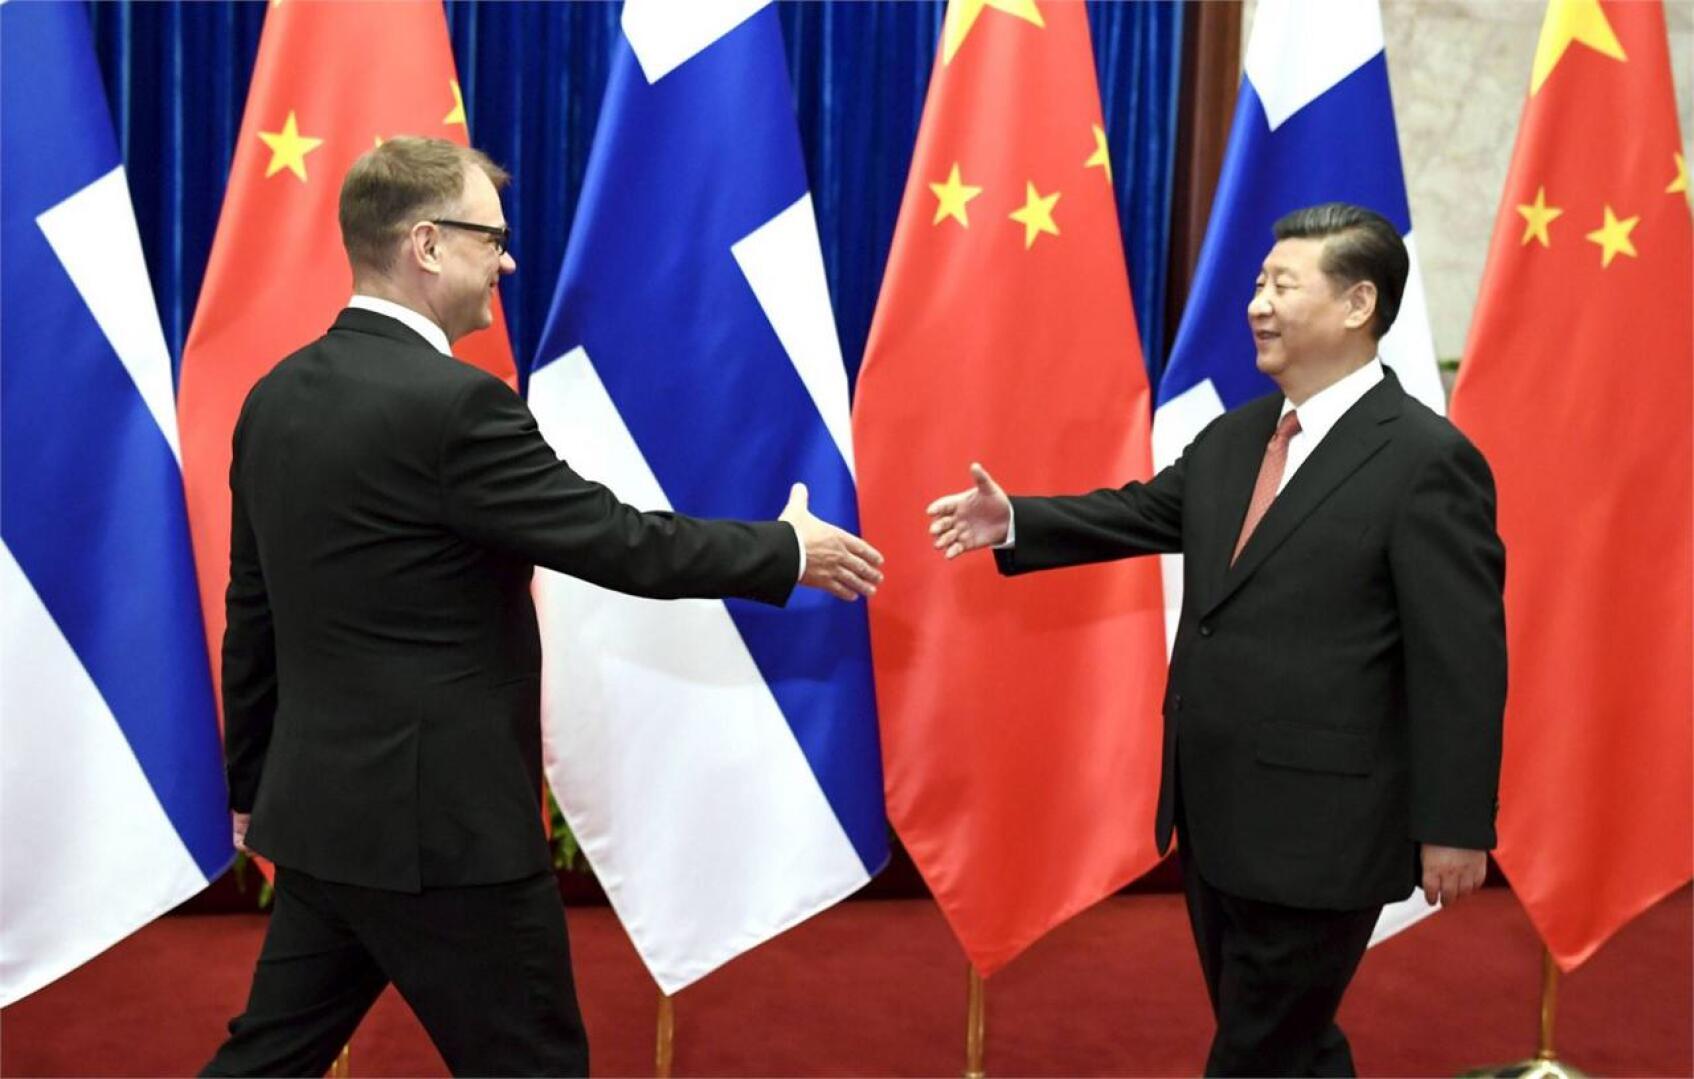 Pääministeri Sipilä sanoi Pekingissä presidentti Xin huhtikuisen Suomen-vierailun olleen yksi itsenäisyyden juhlavuoden kohokohdista. LEHTIKUVA / JUSSI NUKARI